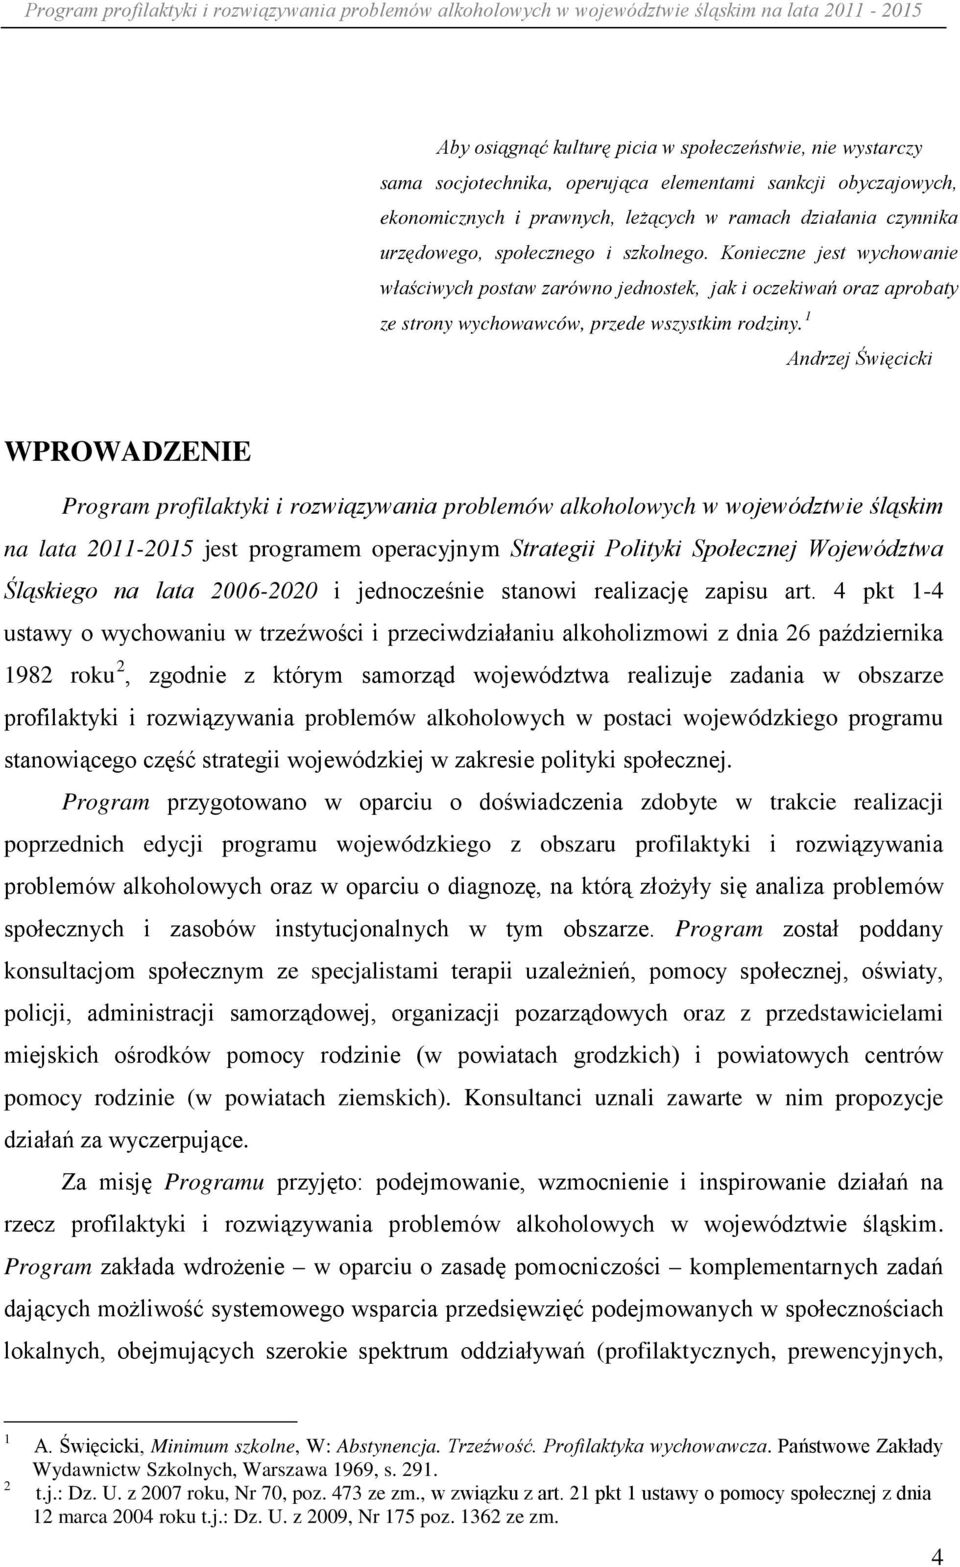 1 Andrzej Święcicki WPROWADZENIE Program profilaktyki i rozwiązywania problemów alkoholowych w województwie śląskim na lata 2011-2015 jest programem operacyjnym Strategii Polityki Społecznej